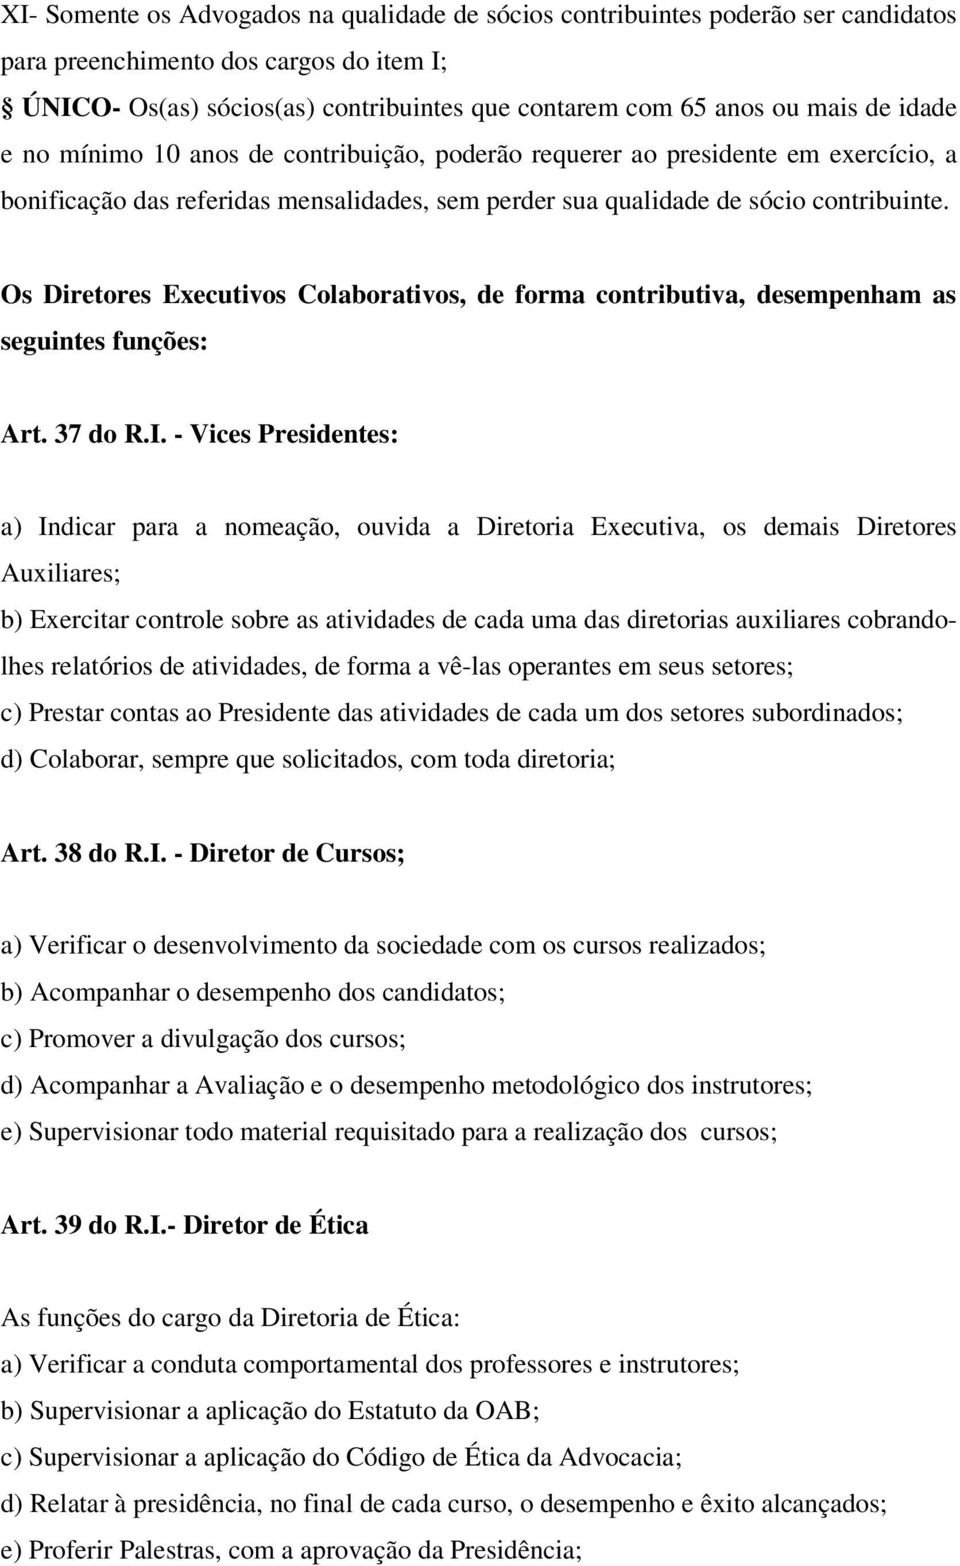 Os Diretores Executivos Colaborativos, de forma contributiva, desempenham as seguintes funções: Art. 37 do R.I.